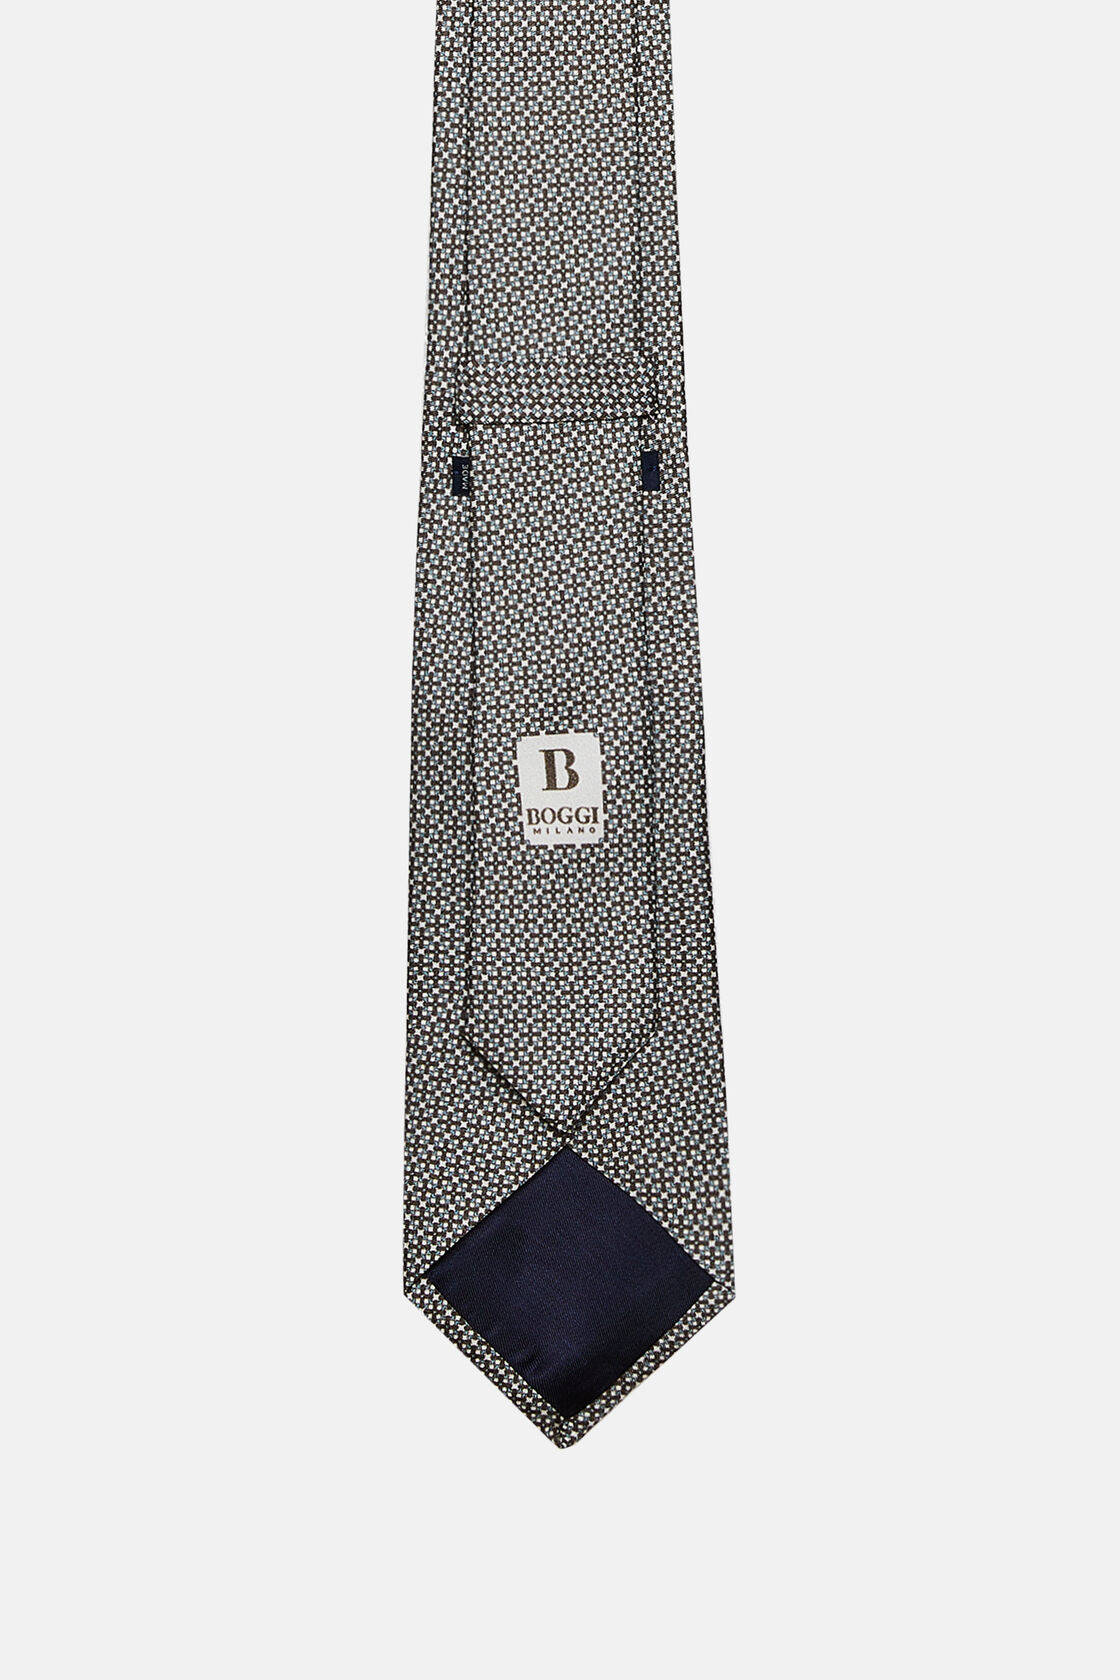 Gravata de seda com padrão micro, Light Blue, hi-res